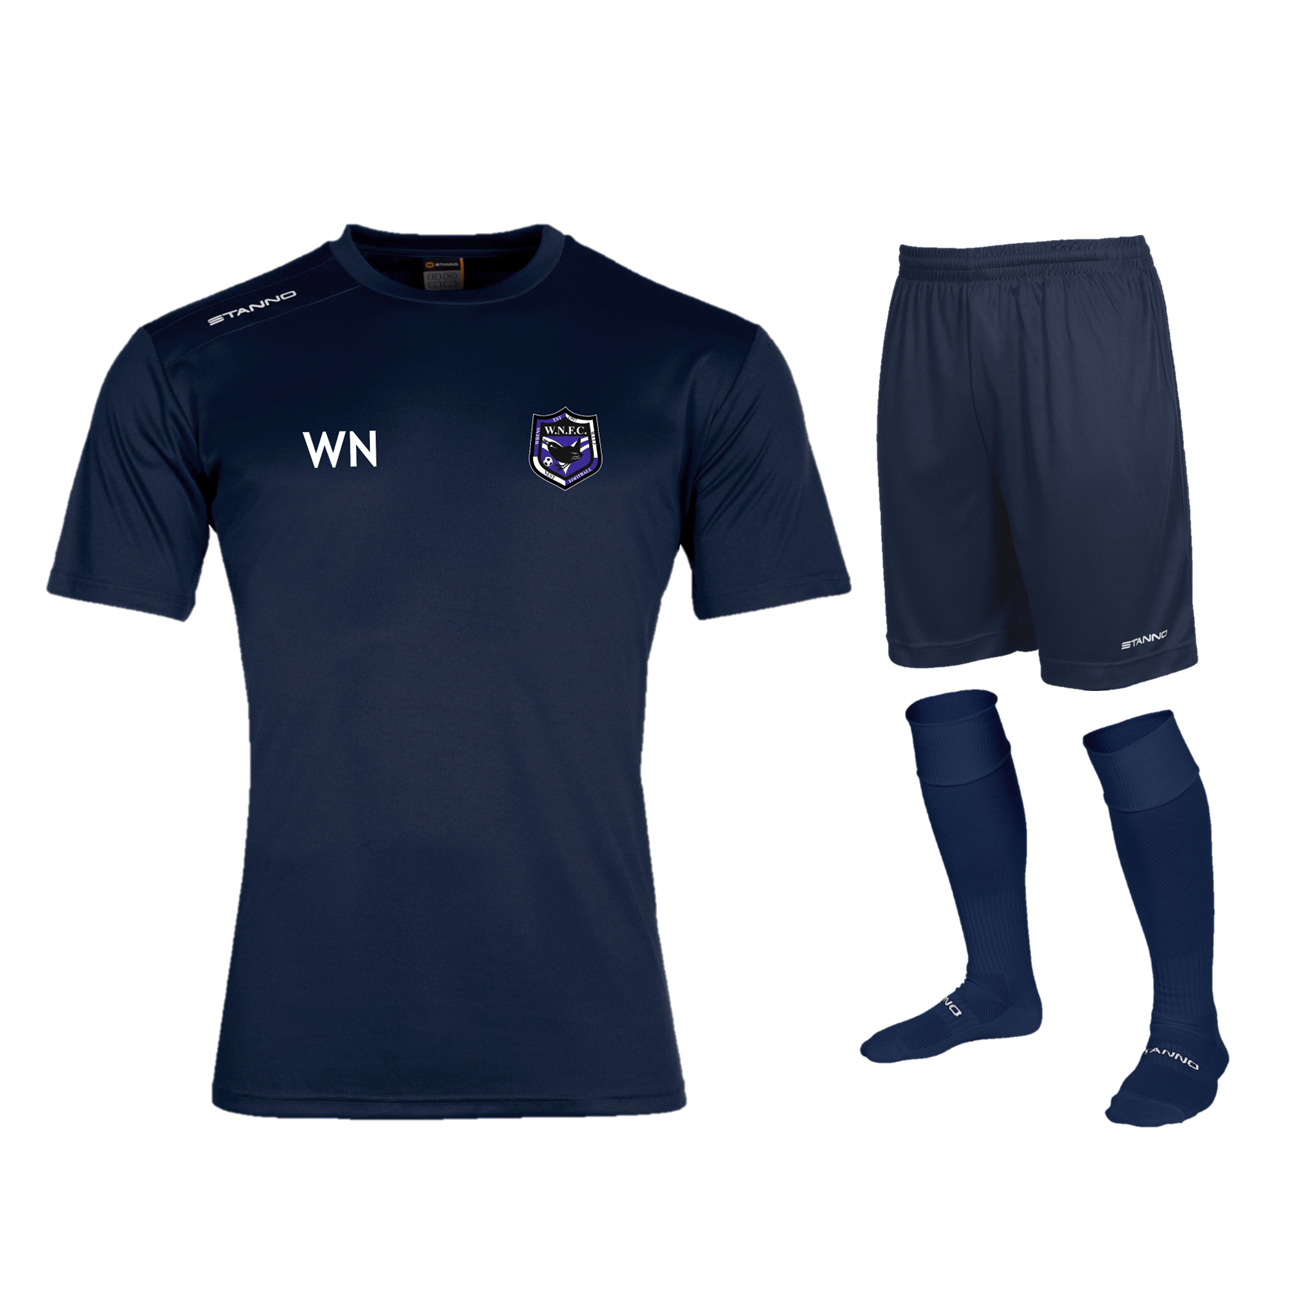 Wrens Nest FC - Senior Training Kit